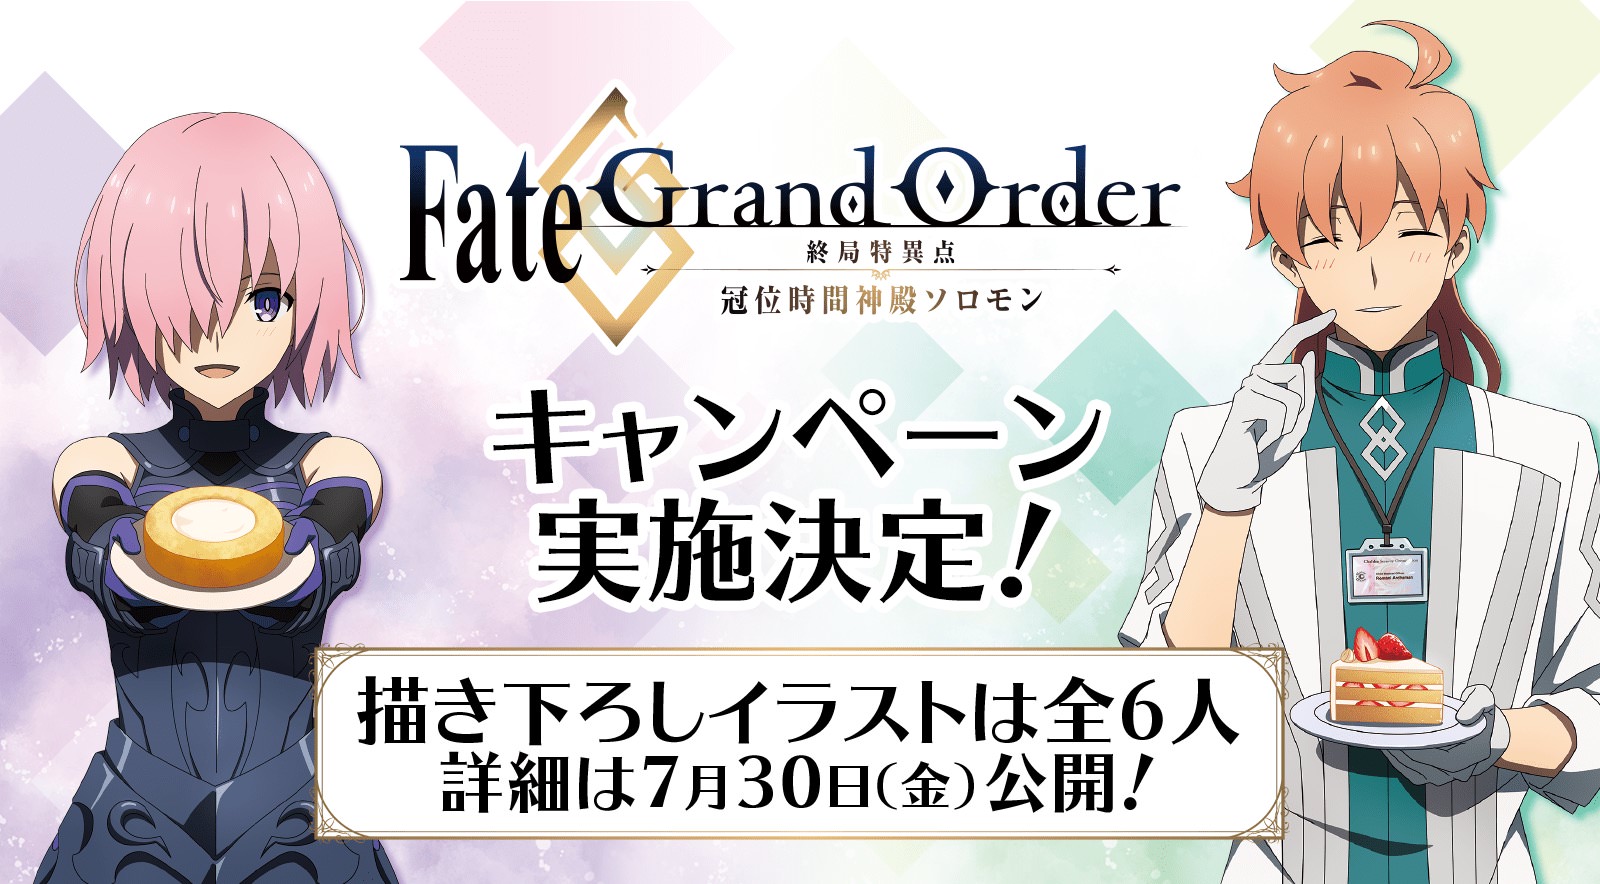 Fate/Grand Order × ローソン 8月10日よりFGOキャンペーン実施!